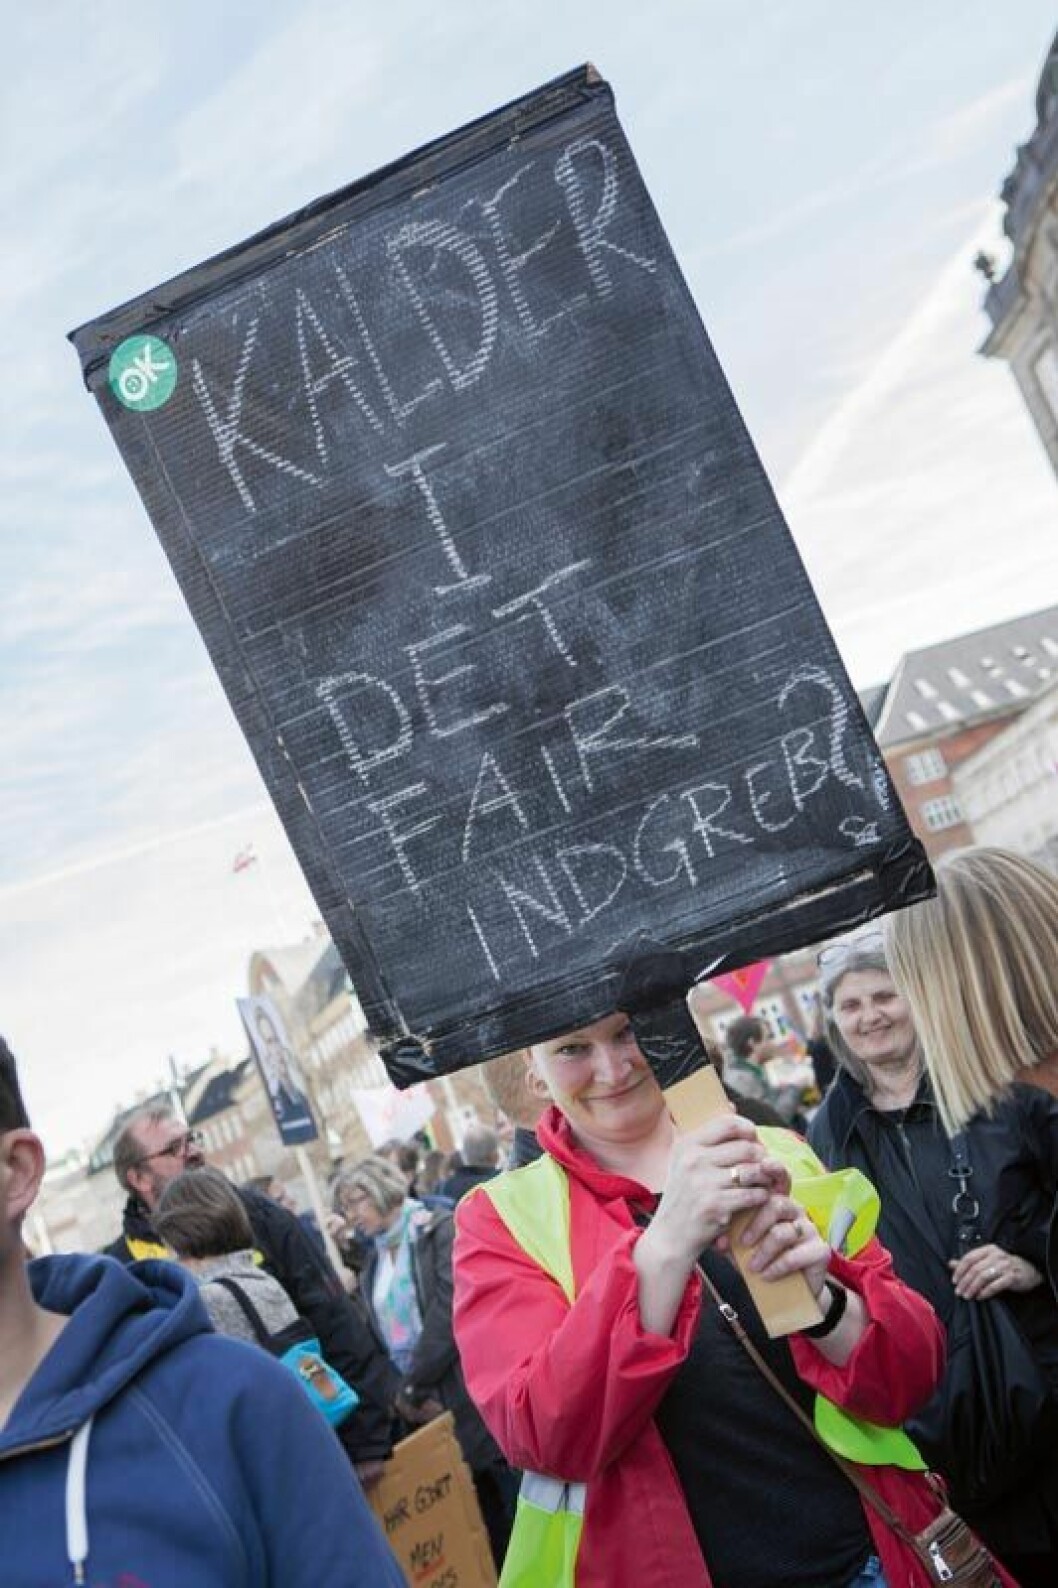 Man skulle have inddraget Lærerforeningen i udarbejdelsen af lov 409, og der var for tæt samarbejde mellem regeringen og KL i forbindelse med lockouten, konkluderer ILO. Billedet fra Christiansborg er fra en demonstration mod indgrebet i 2013.